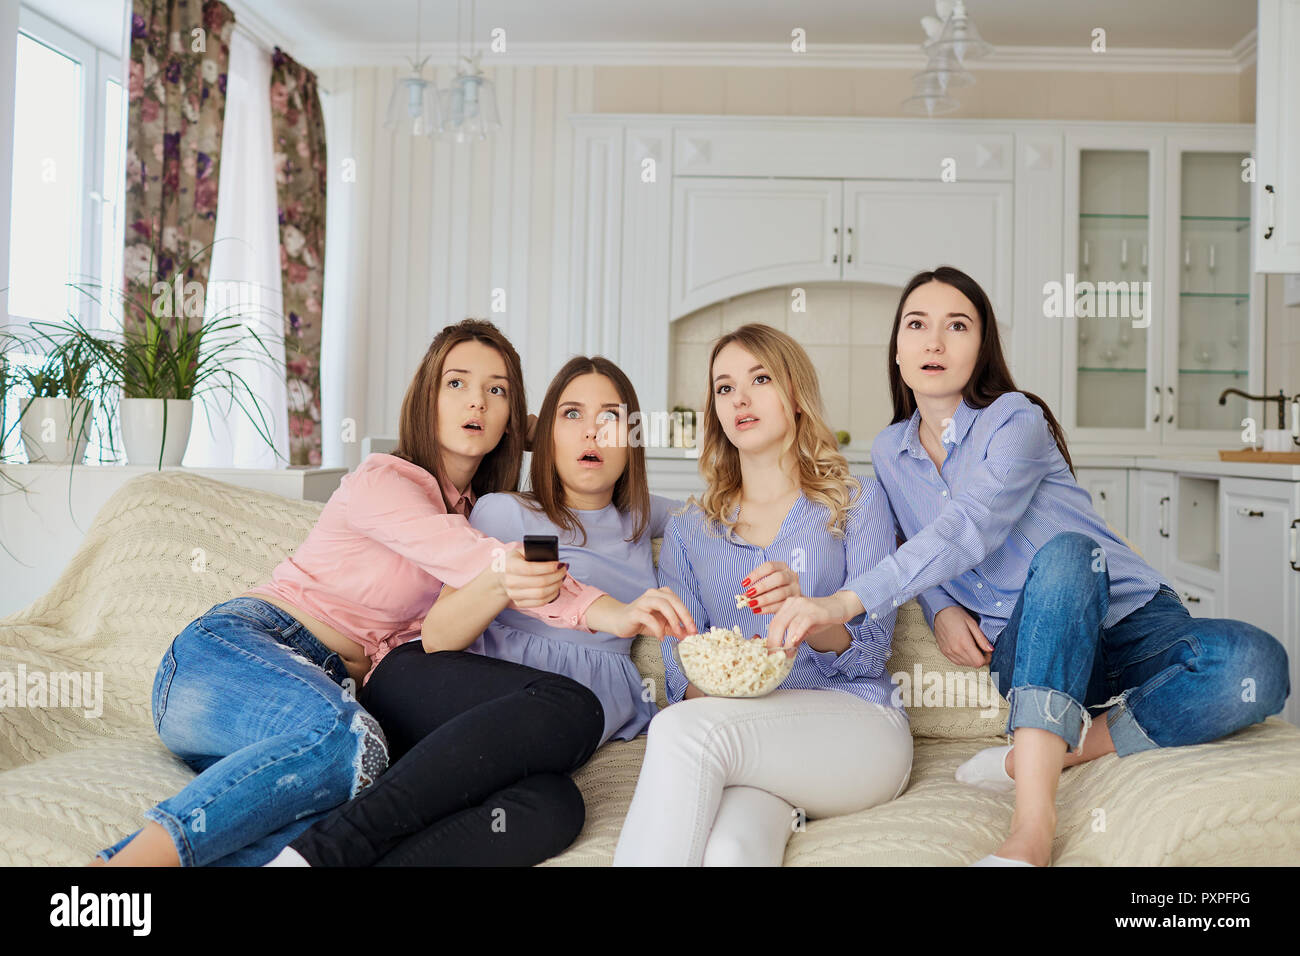 Les jeunes filles de regarder la télévision, eating popcorn assis sur le canapé. Banque D'Images